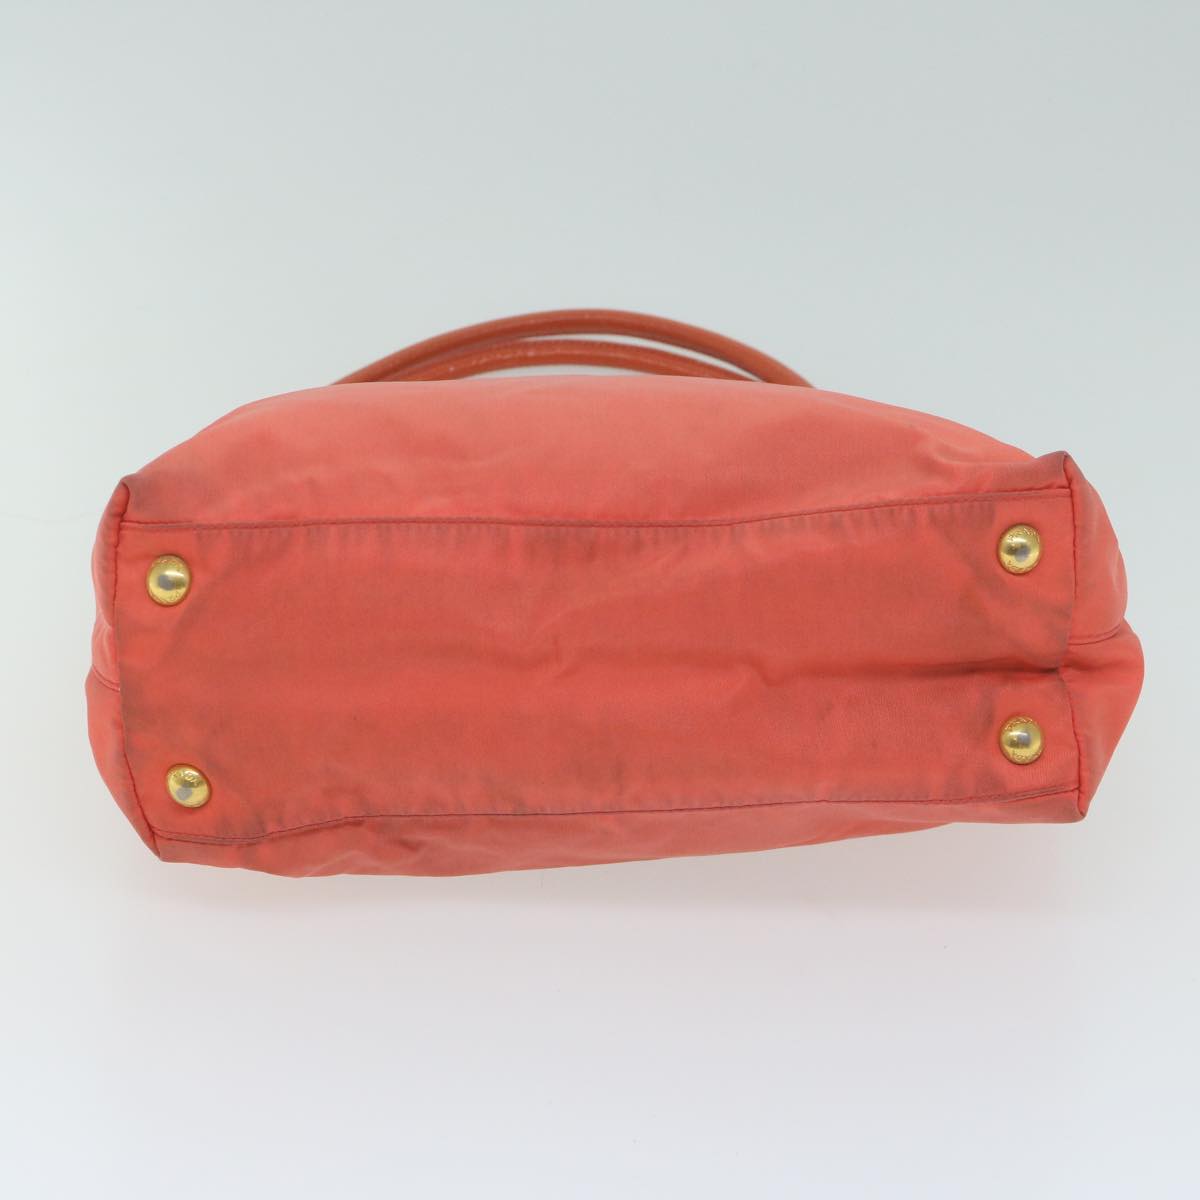 PRADA Tote Bag Nylon Orange Auth 64598